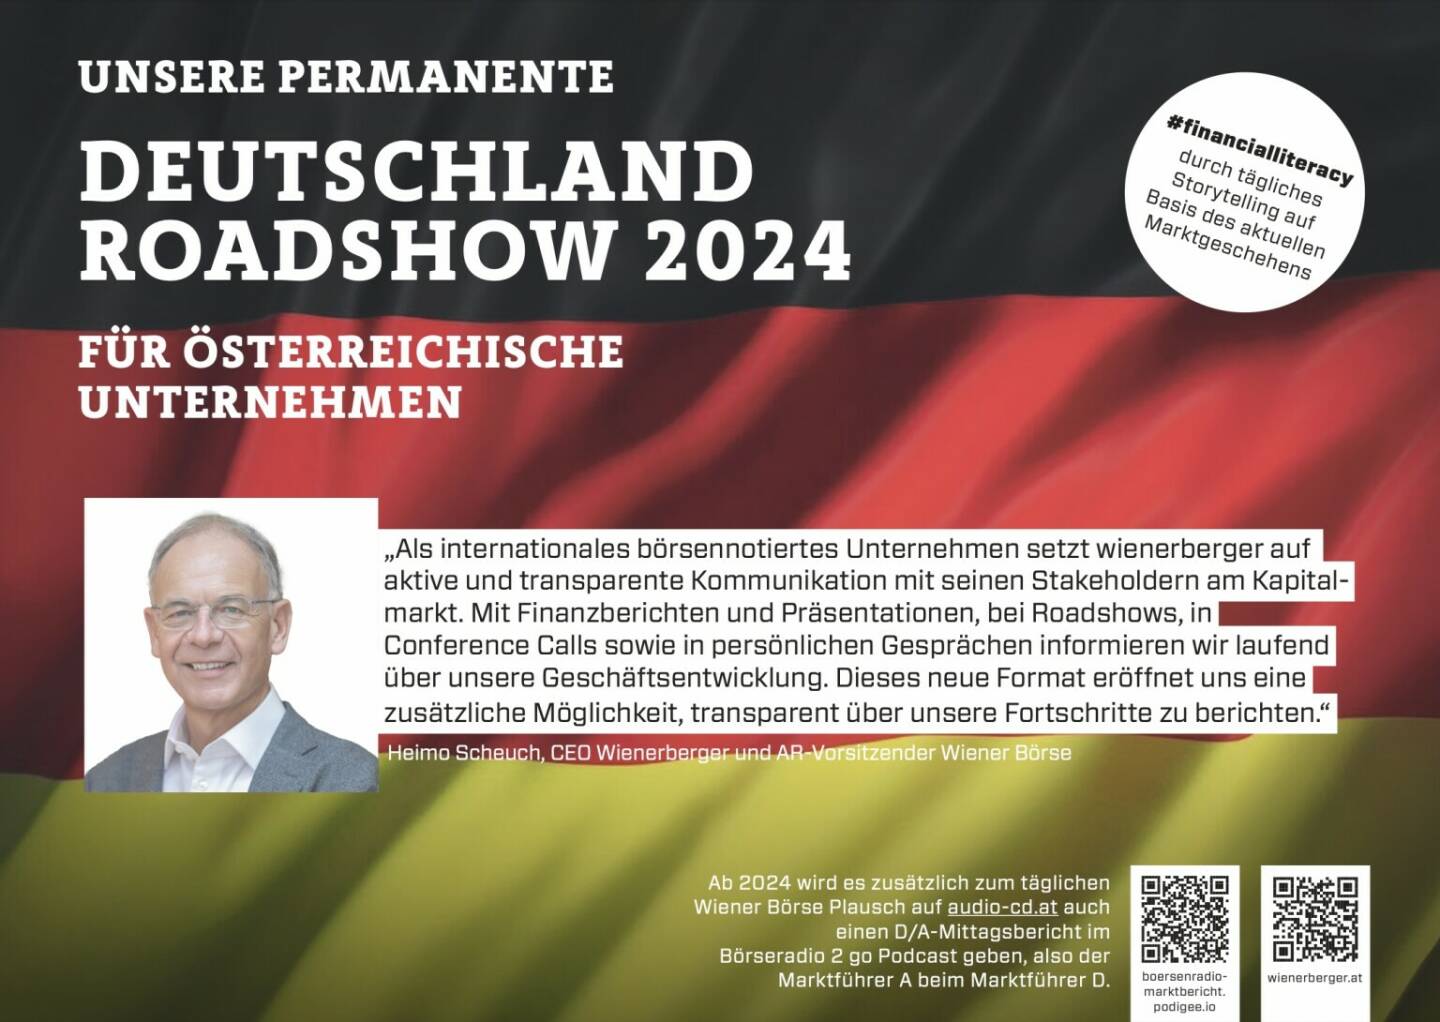 Heimo Scheuch mit Wienerberger 2024 mit uns auf Deutschlandroadshow für https://boersenradio-marktbericht.podigee.io